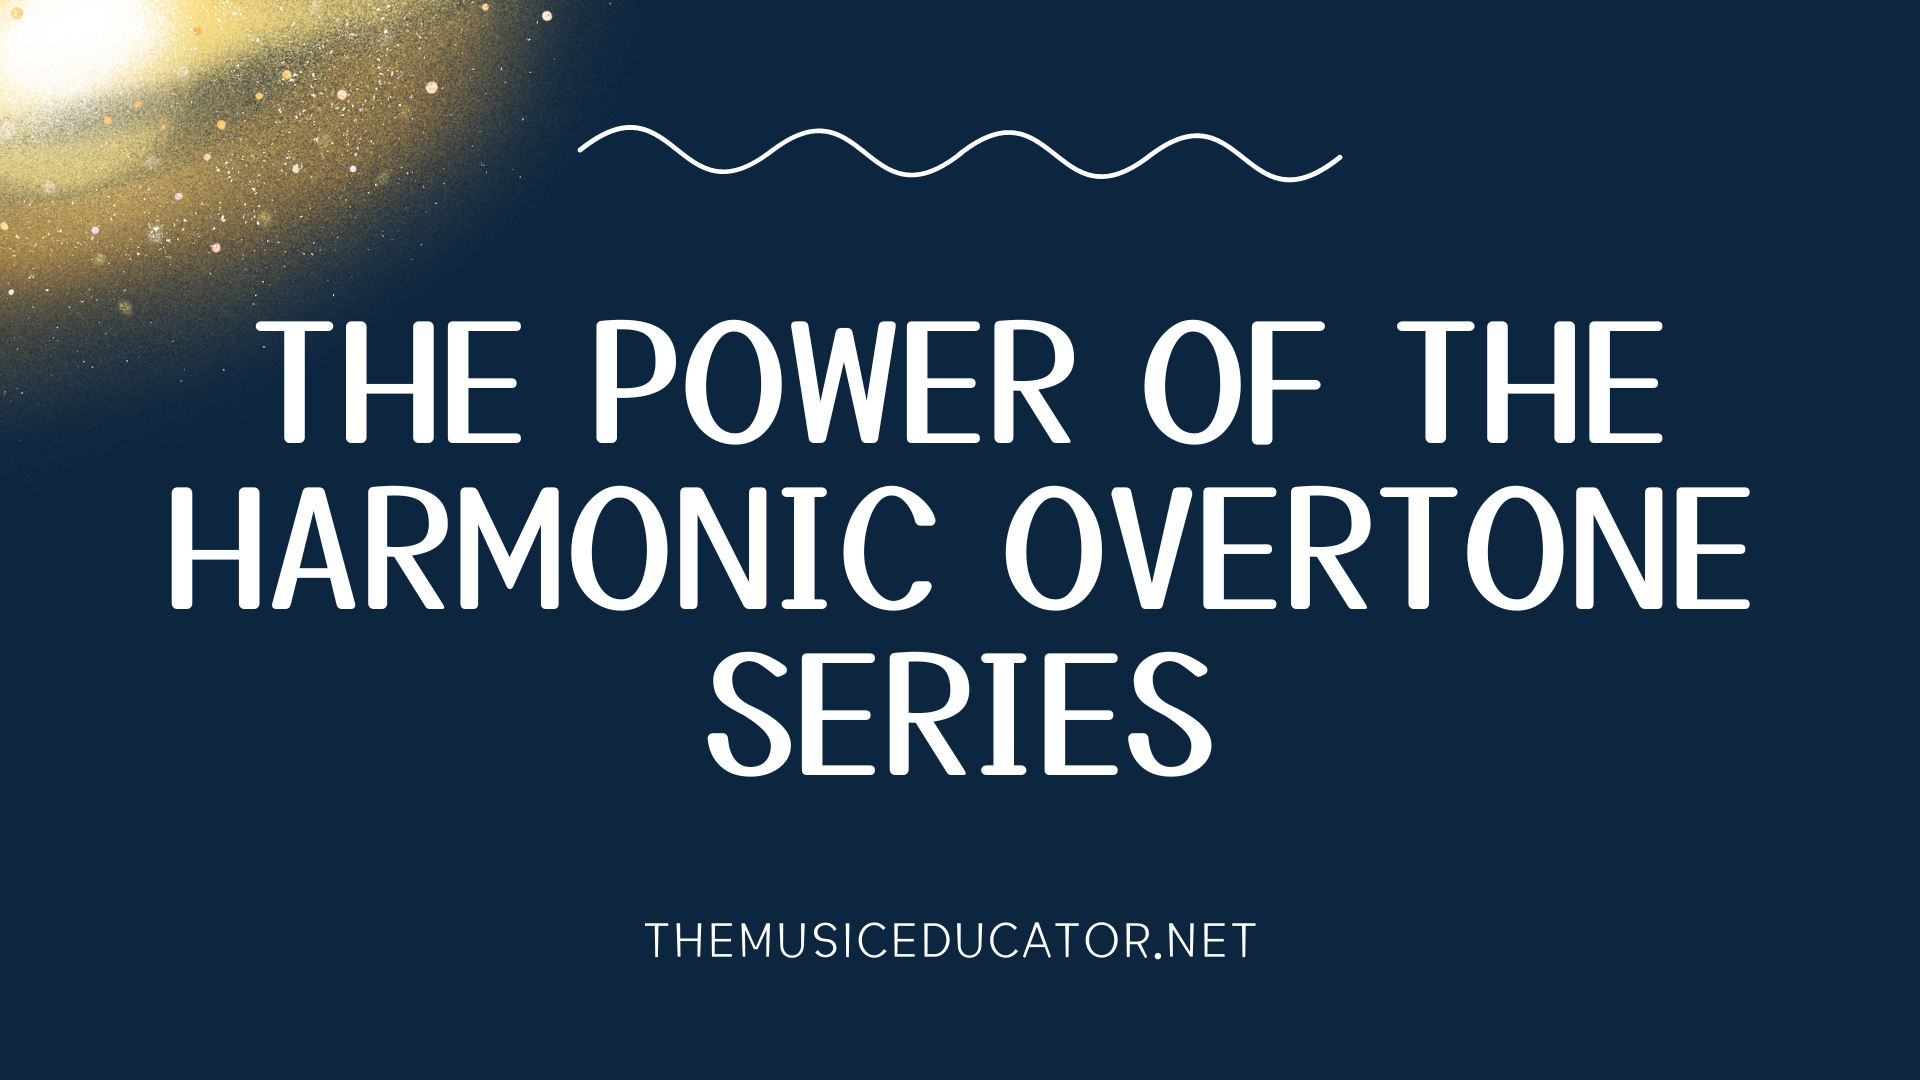 The Harmonic Overtone Series